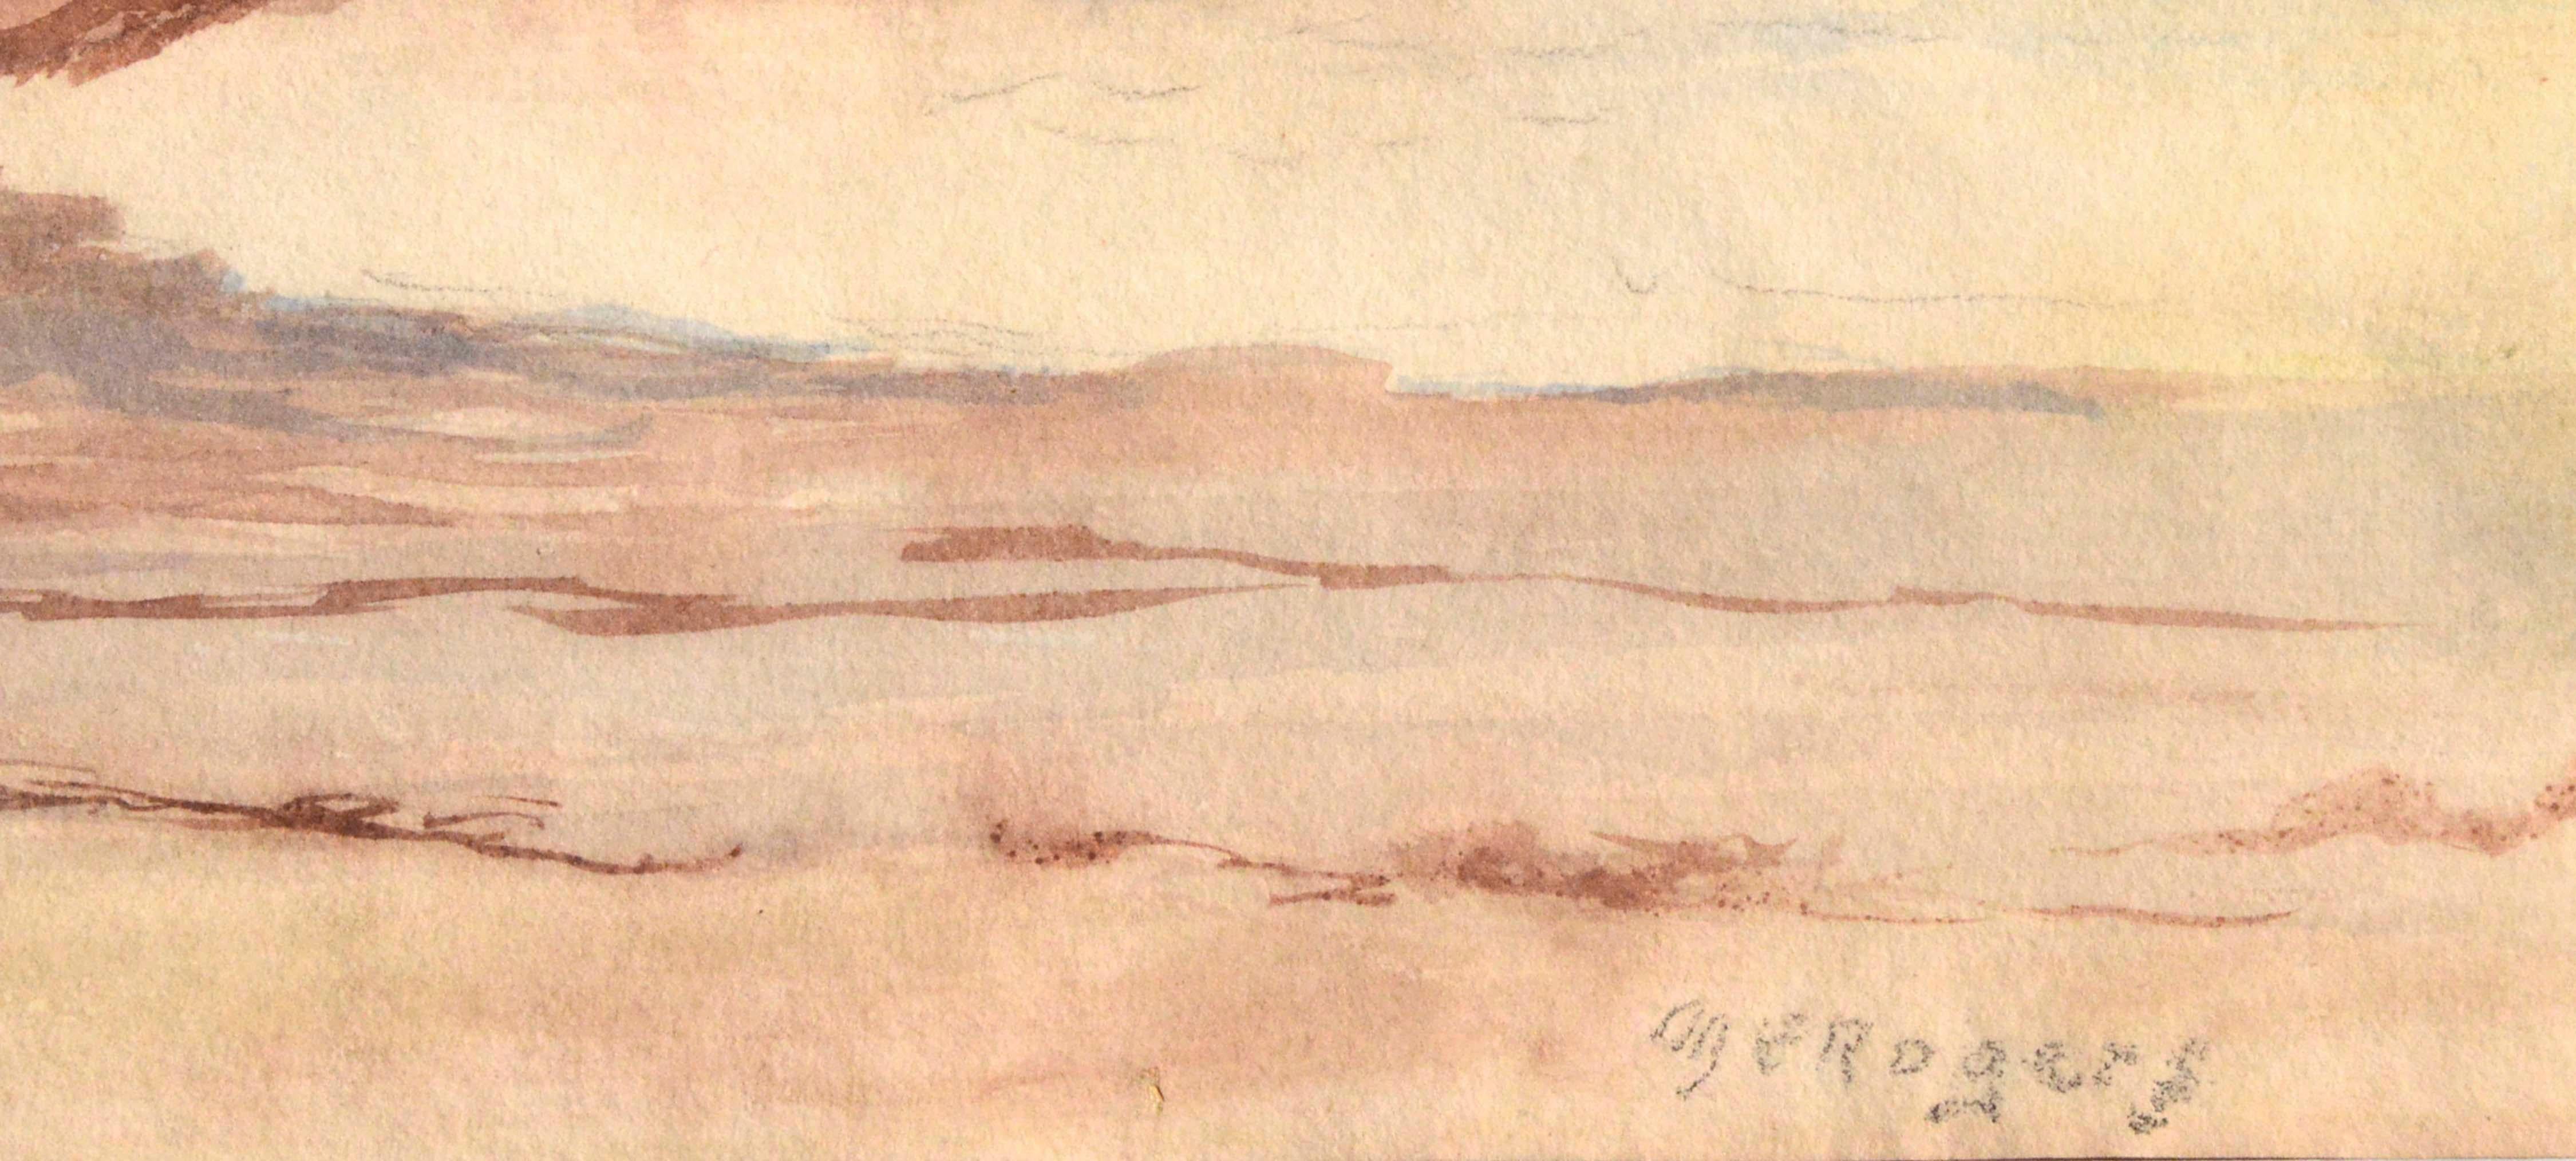 Niedriger Teppich – Meereslandschaft aus der Mitte des Jahrhunderts  (Weiß), Landscape Painting, von Margaret Esther Rogers